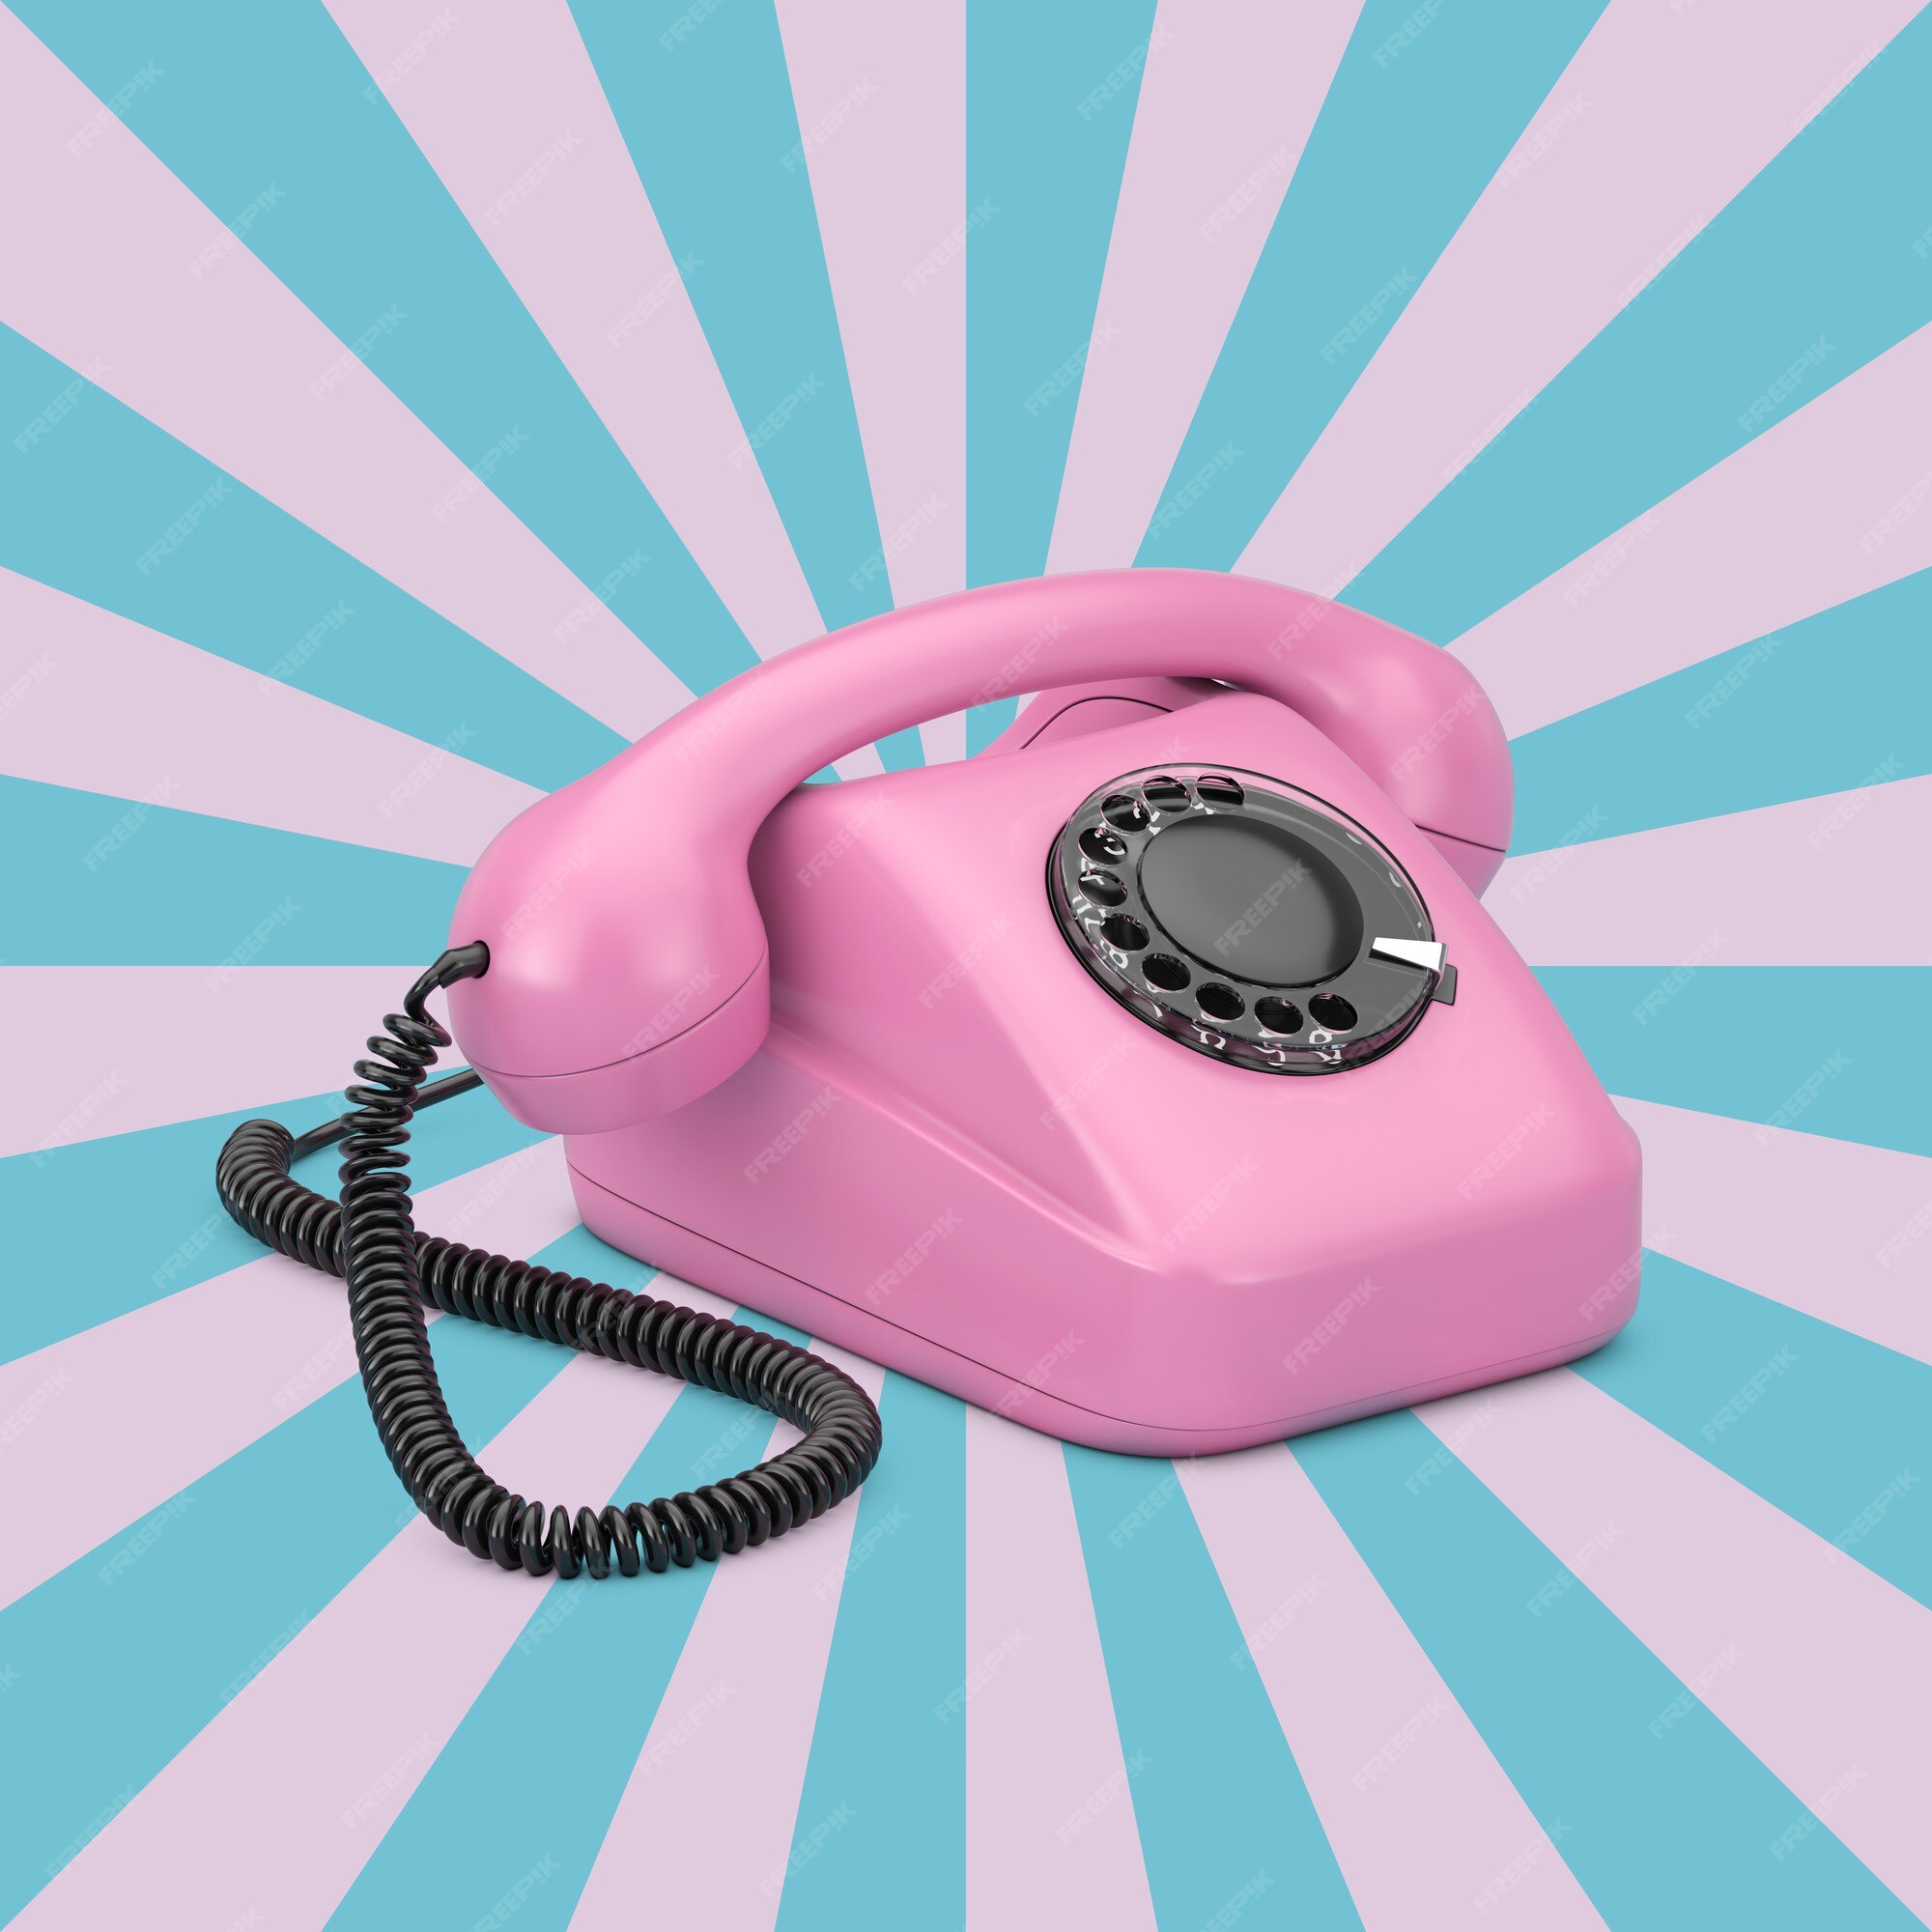 Chiếc điện thoại xoay màu hồng hoài cổ thực sự là một tác phẩm nghệ thuật của thời đại. Chắc chắn bức ảnh này sẽ đưa bạn trở lại khoảng thời gian của giới trẻ và những kỷ niệm đáng nhớ cùng những trăn trở về tình yêu.